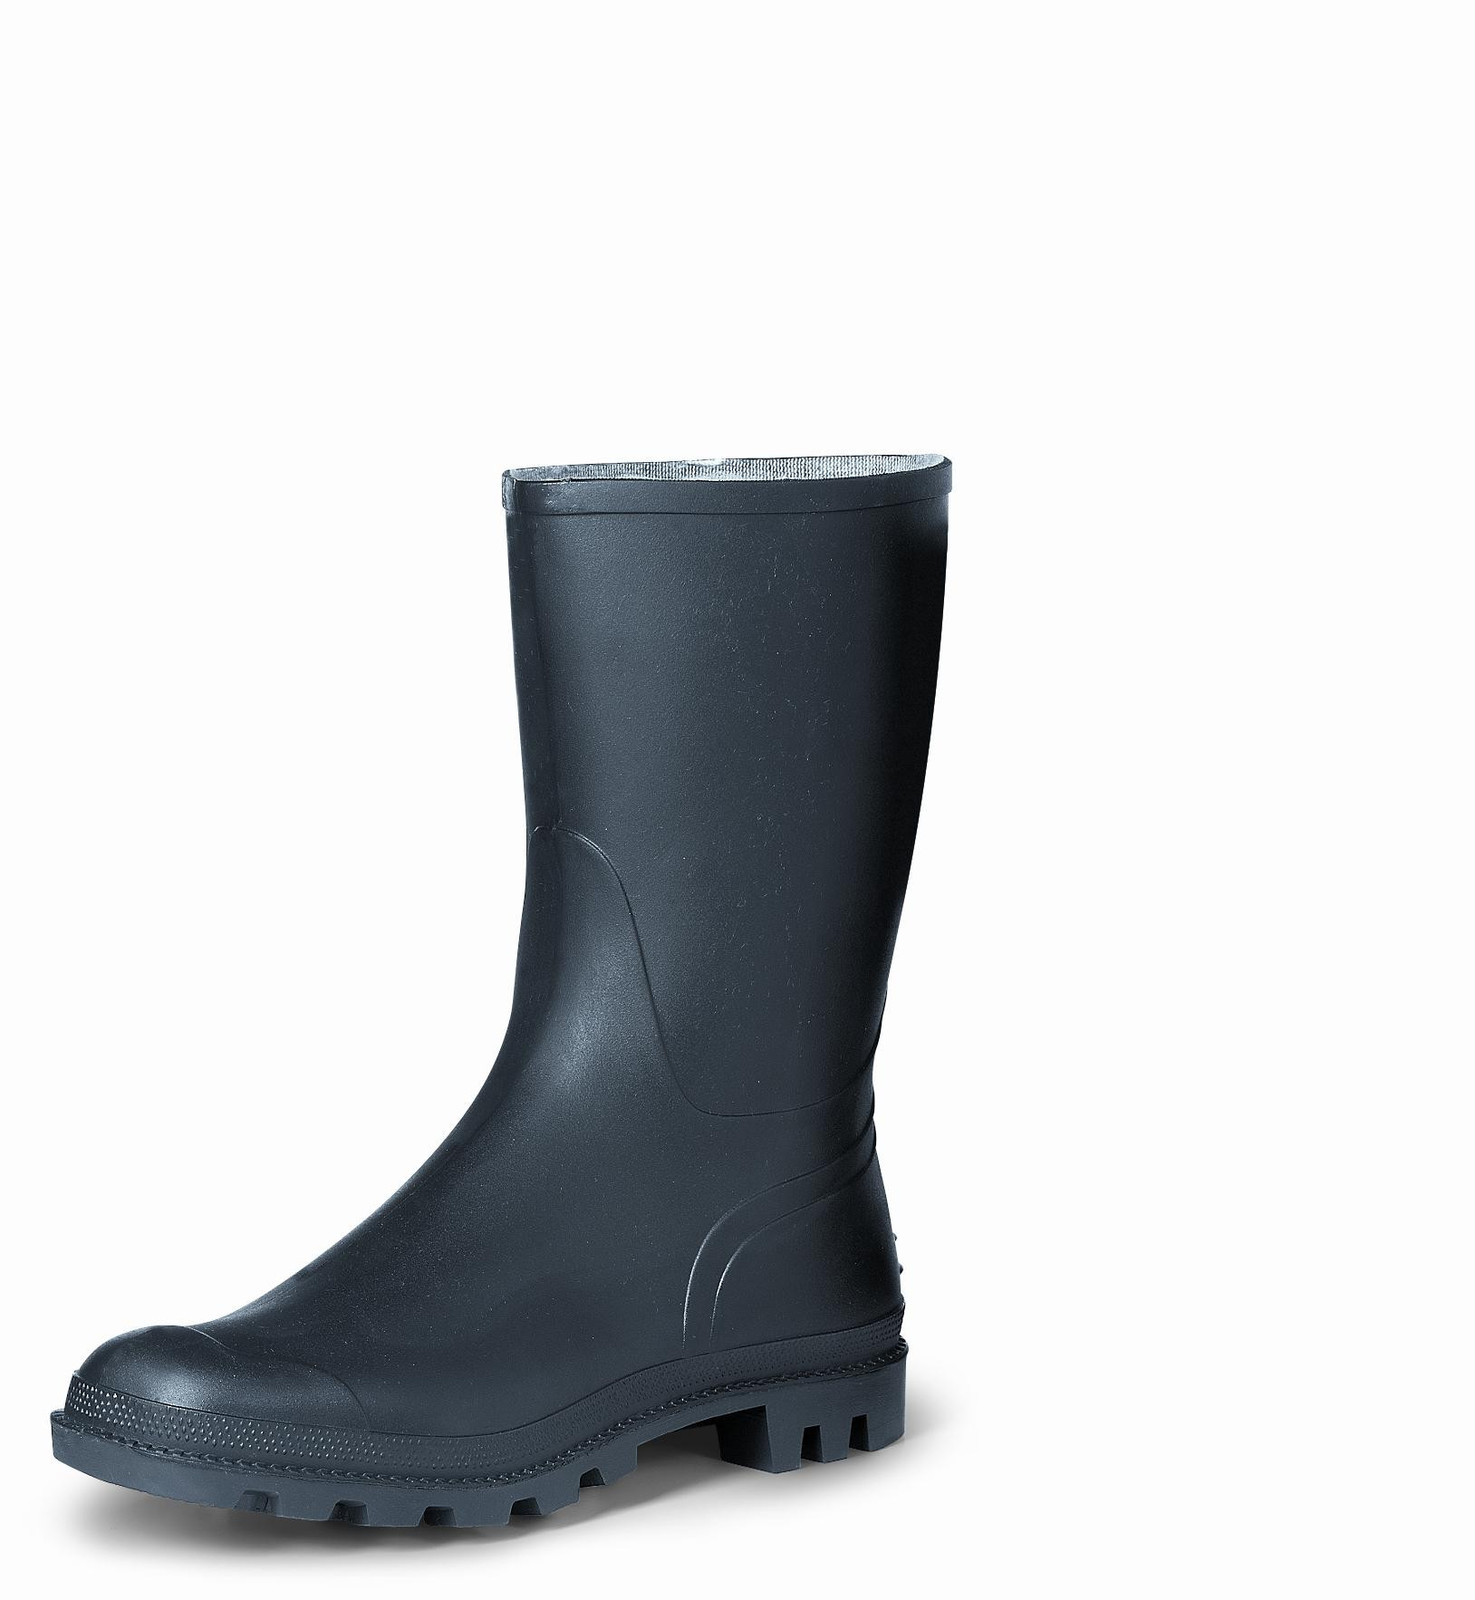 Gumáky Boots Troncheto PVC nízke - veľkosť: 46, farba: čierna